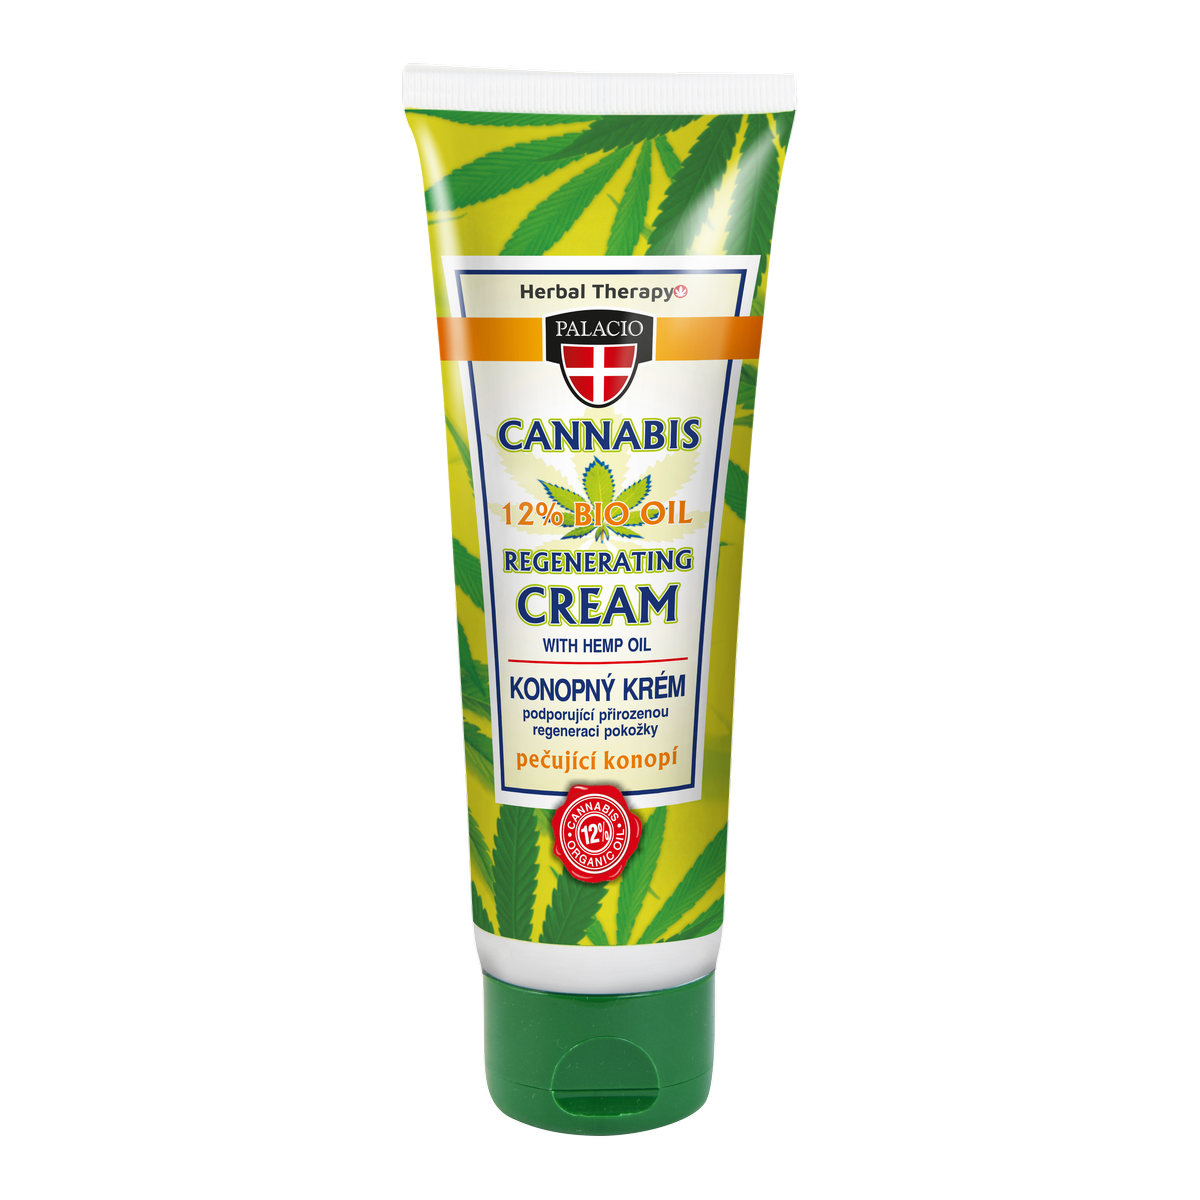 CANNABIS Hand Cream 125ml P0420 ENG WEB 47